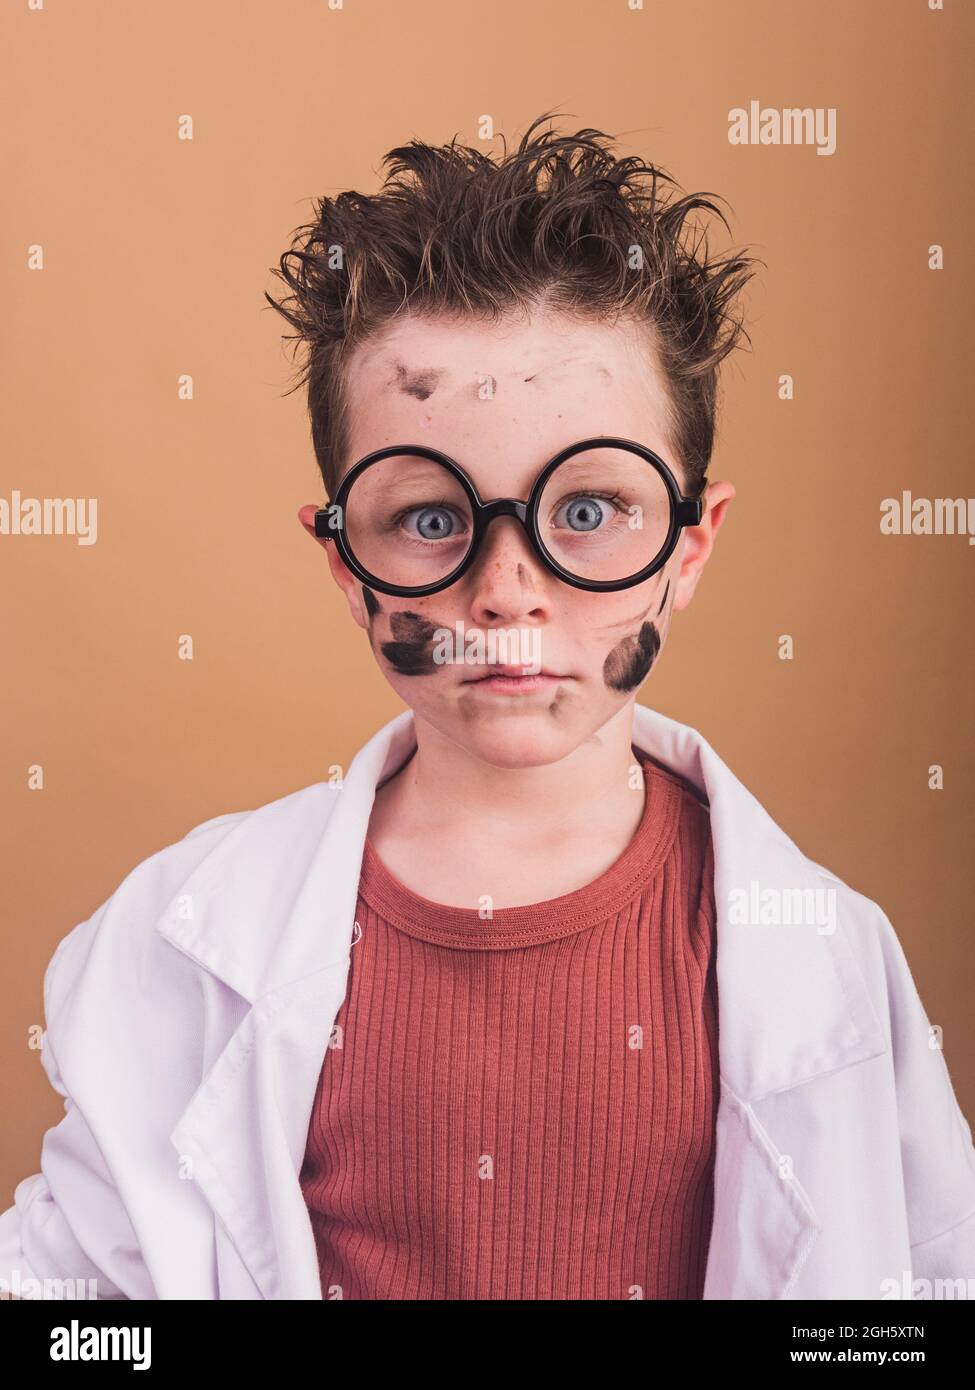 Chimiste garçon dans un peignoir de laboratoire et des verres en plastique regardant l'appareil photo avec un regard fou sur fond beige Banque D'Images